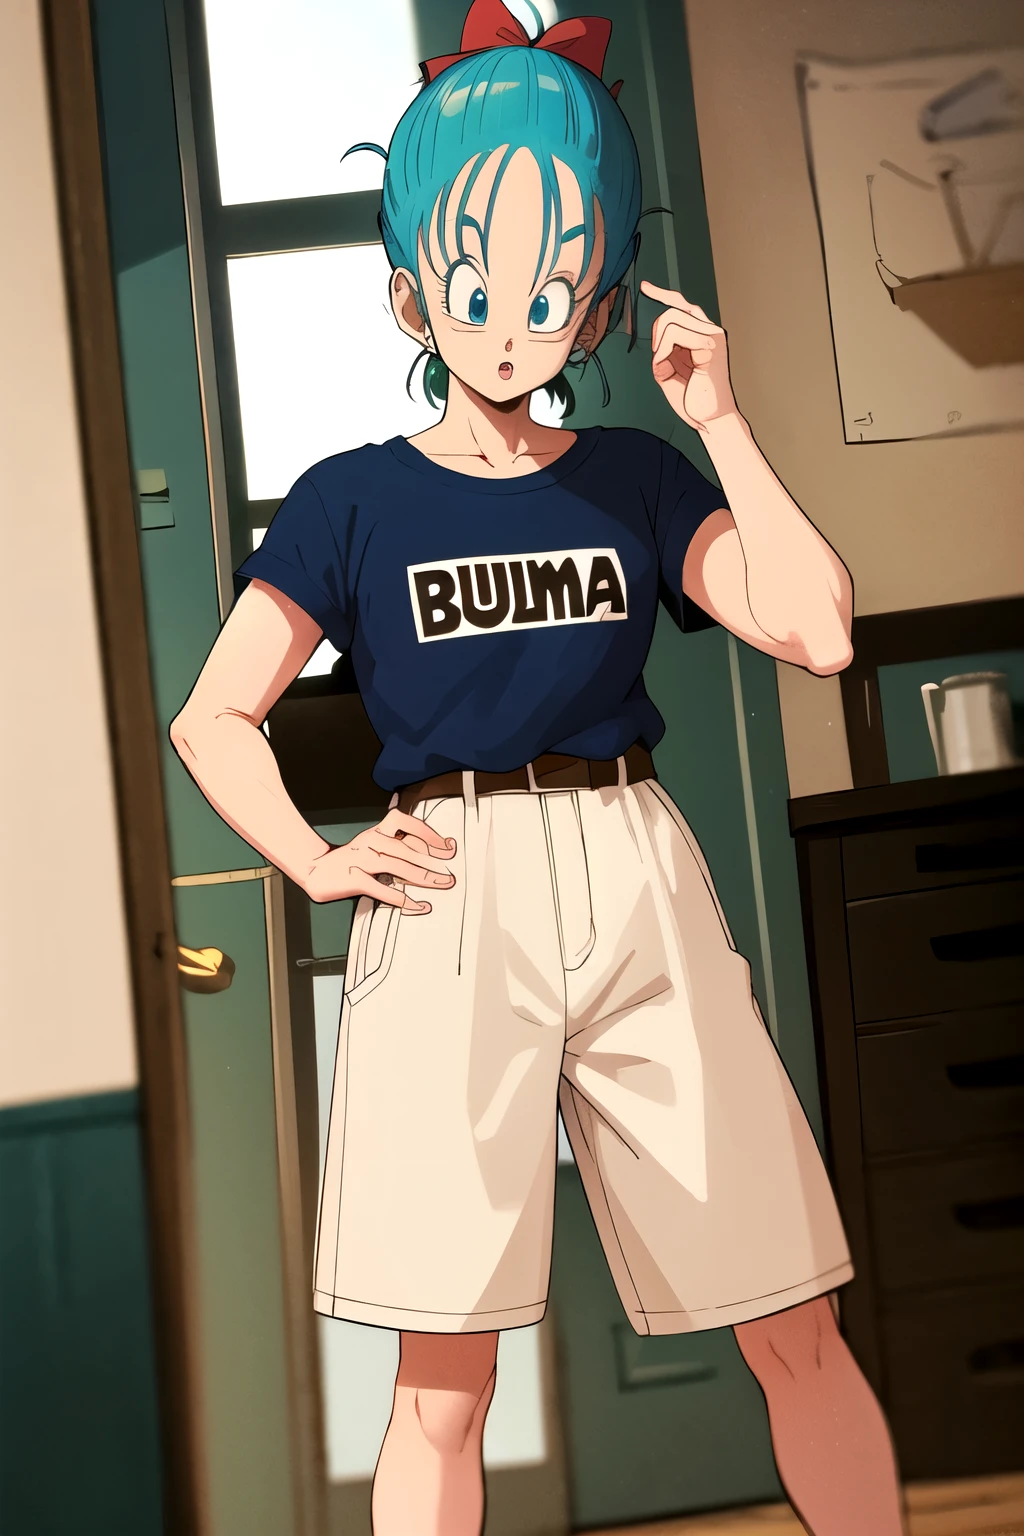 Bulma com as roupas de Goku